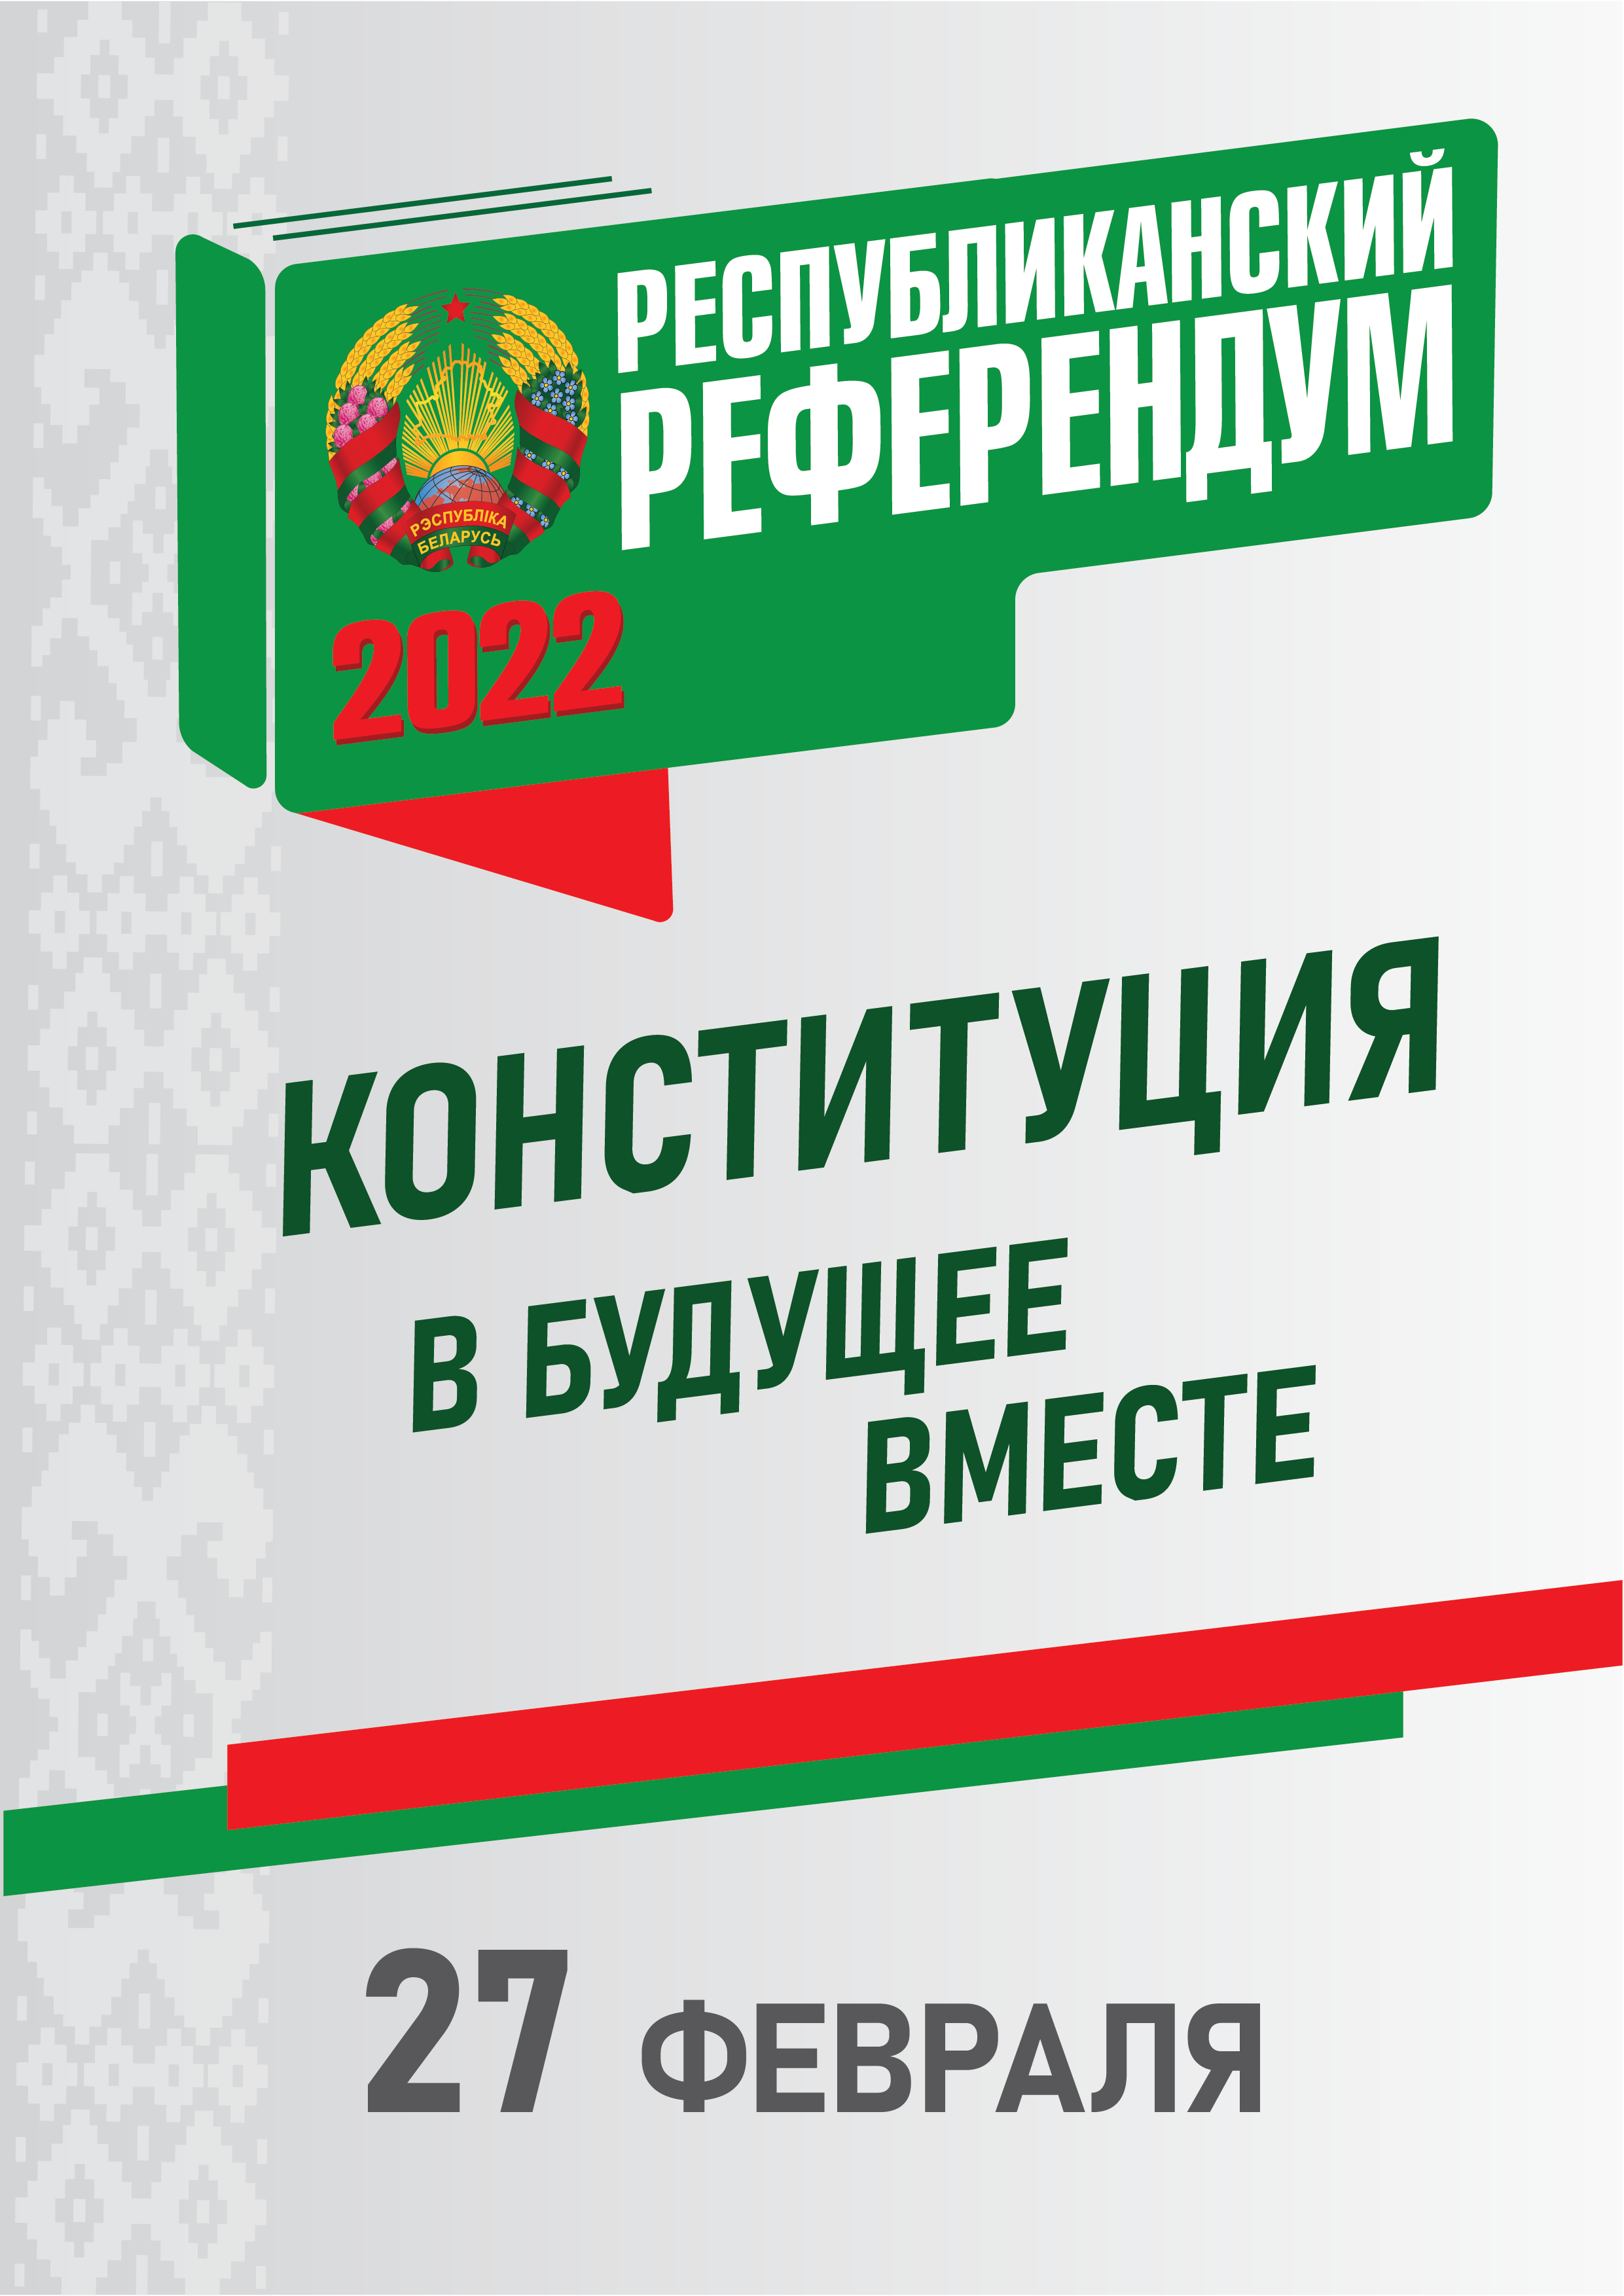 Refierendum plakat RUS 1